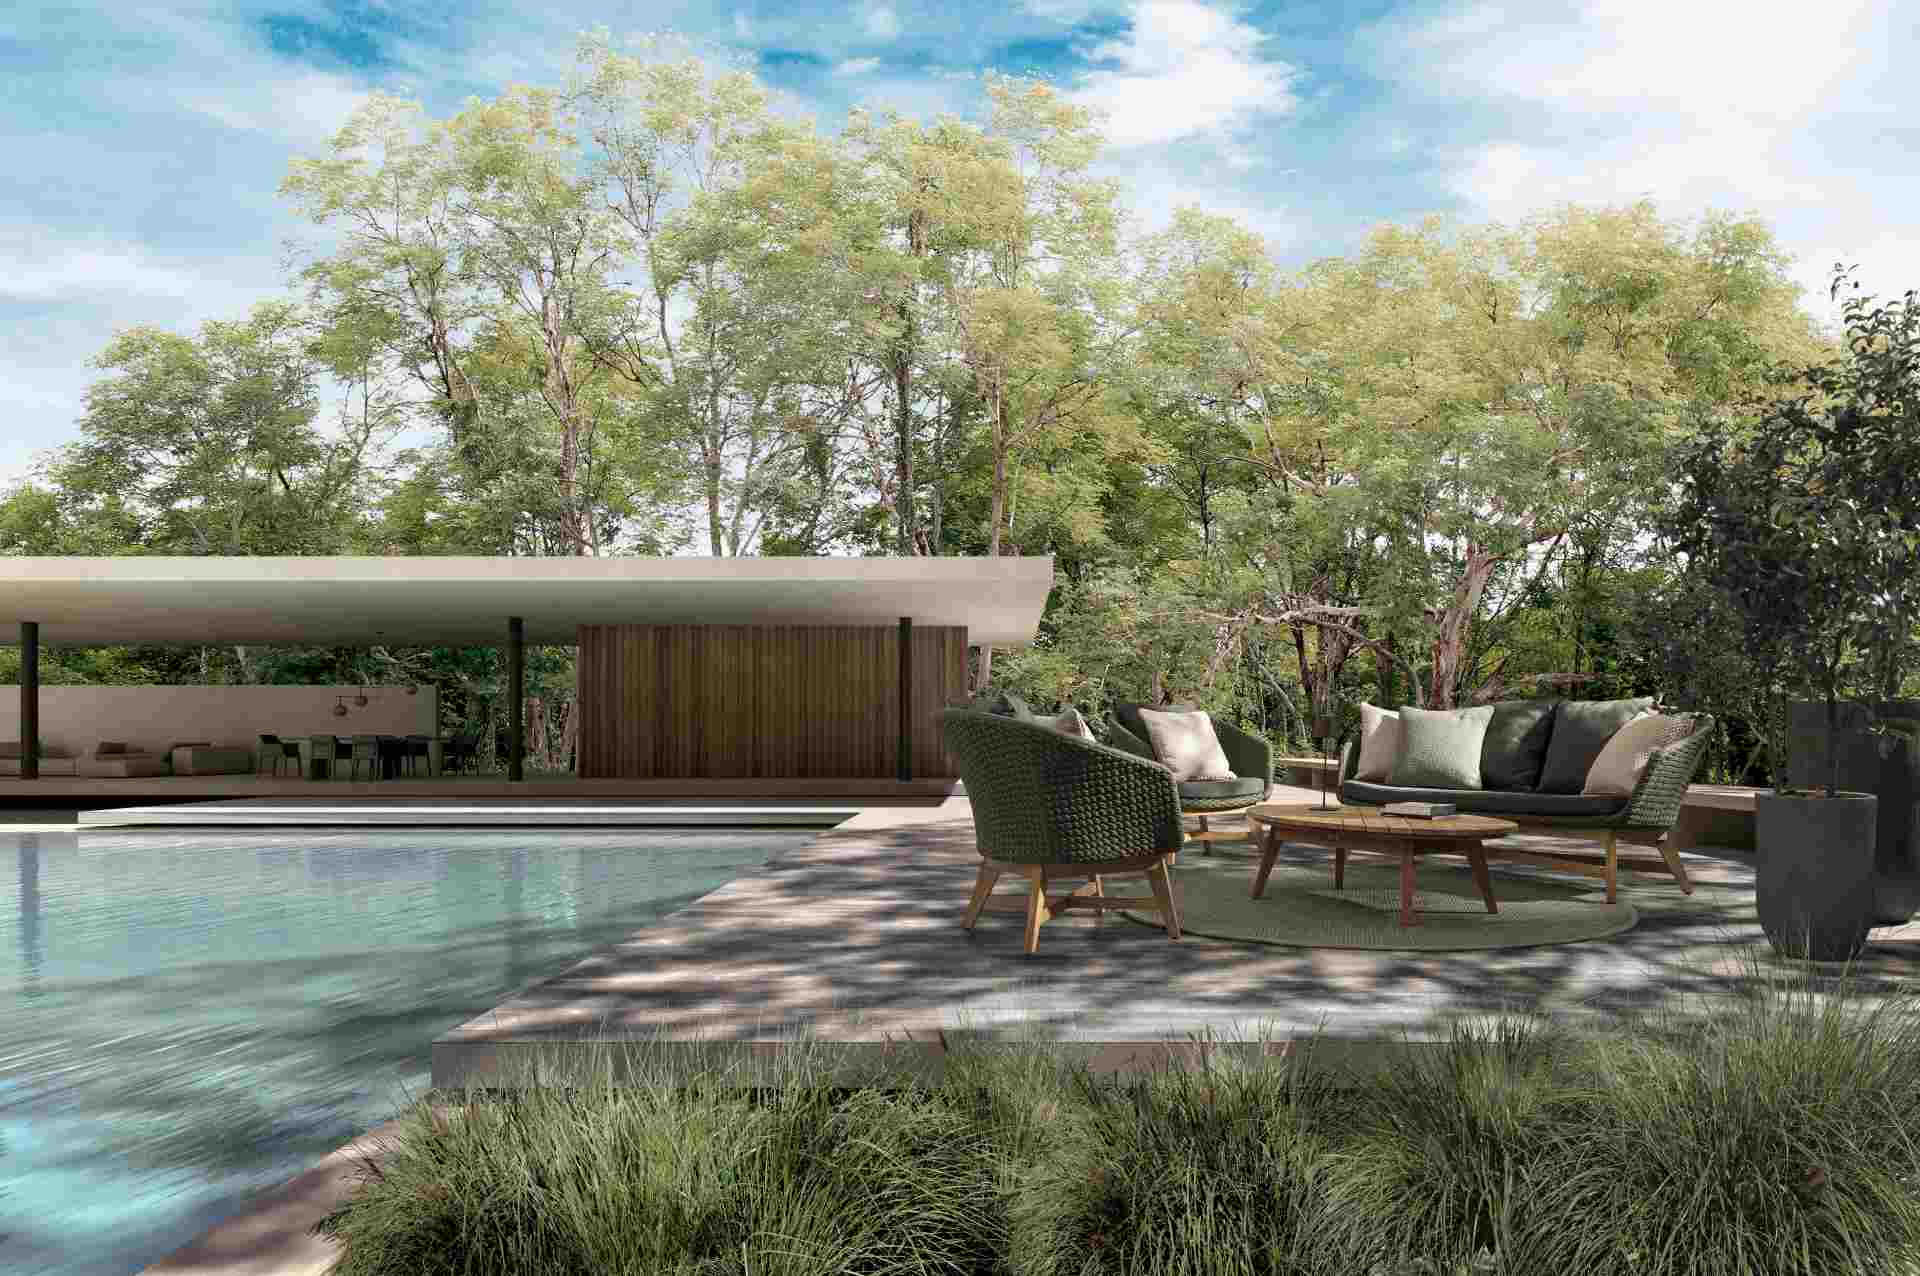 Das Gartensofa Coachella überzeugt mit seinem modernen Design. Gefertigt wurde es aus Olefin-Stoff, welcher einen grünen Farbton besitzt. Das Gestell ist aus Teakholz und hat eine natürliche Farbe. Das Sofa verfügt über eine Sitzhöhe von 39 cm und ist für